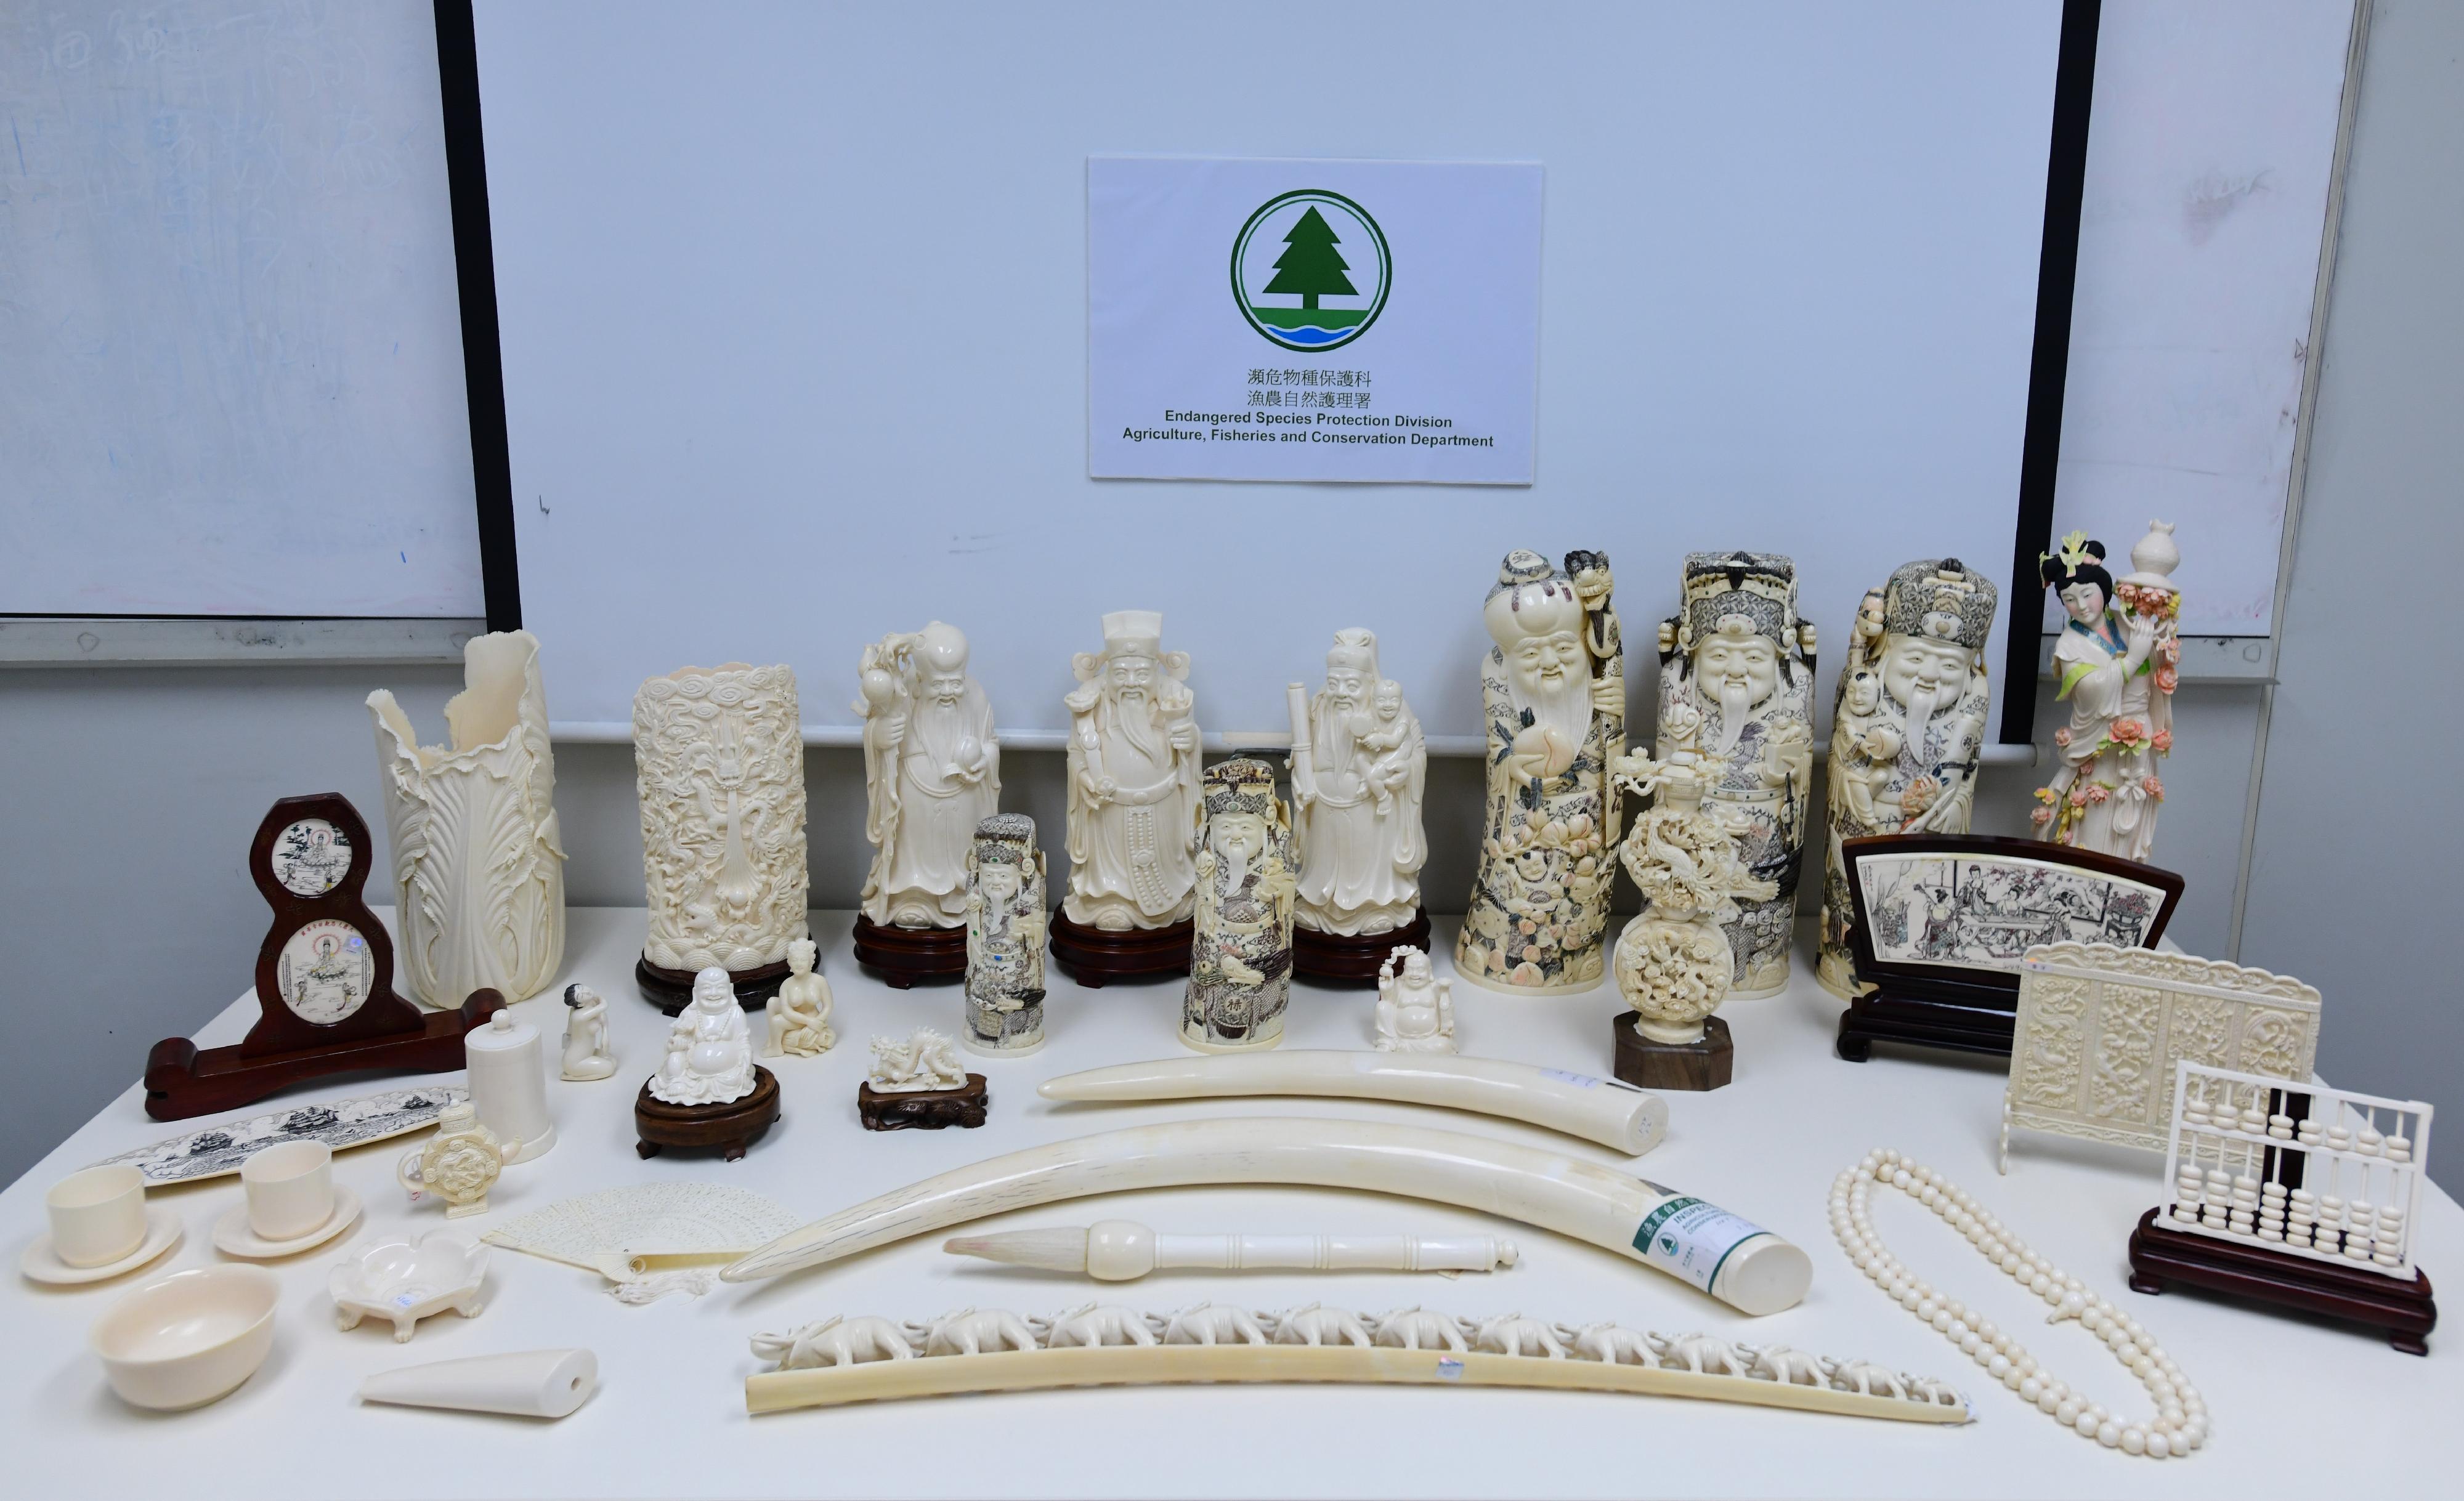 渔农自然护理署昨日（七月二十七日）在油尖旺区一间店铺检获284件怀疑象牙制品。图示部分检获的怀疑象牙制品。